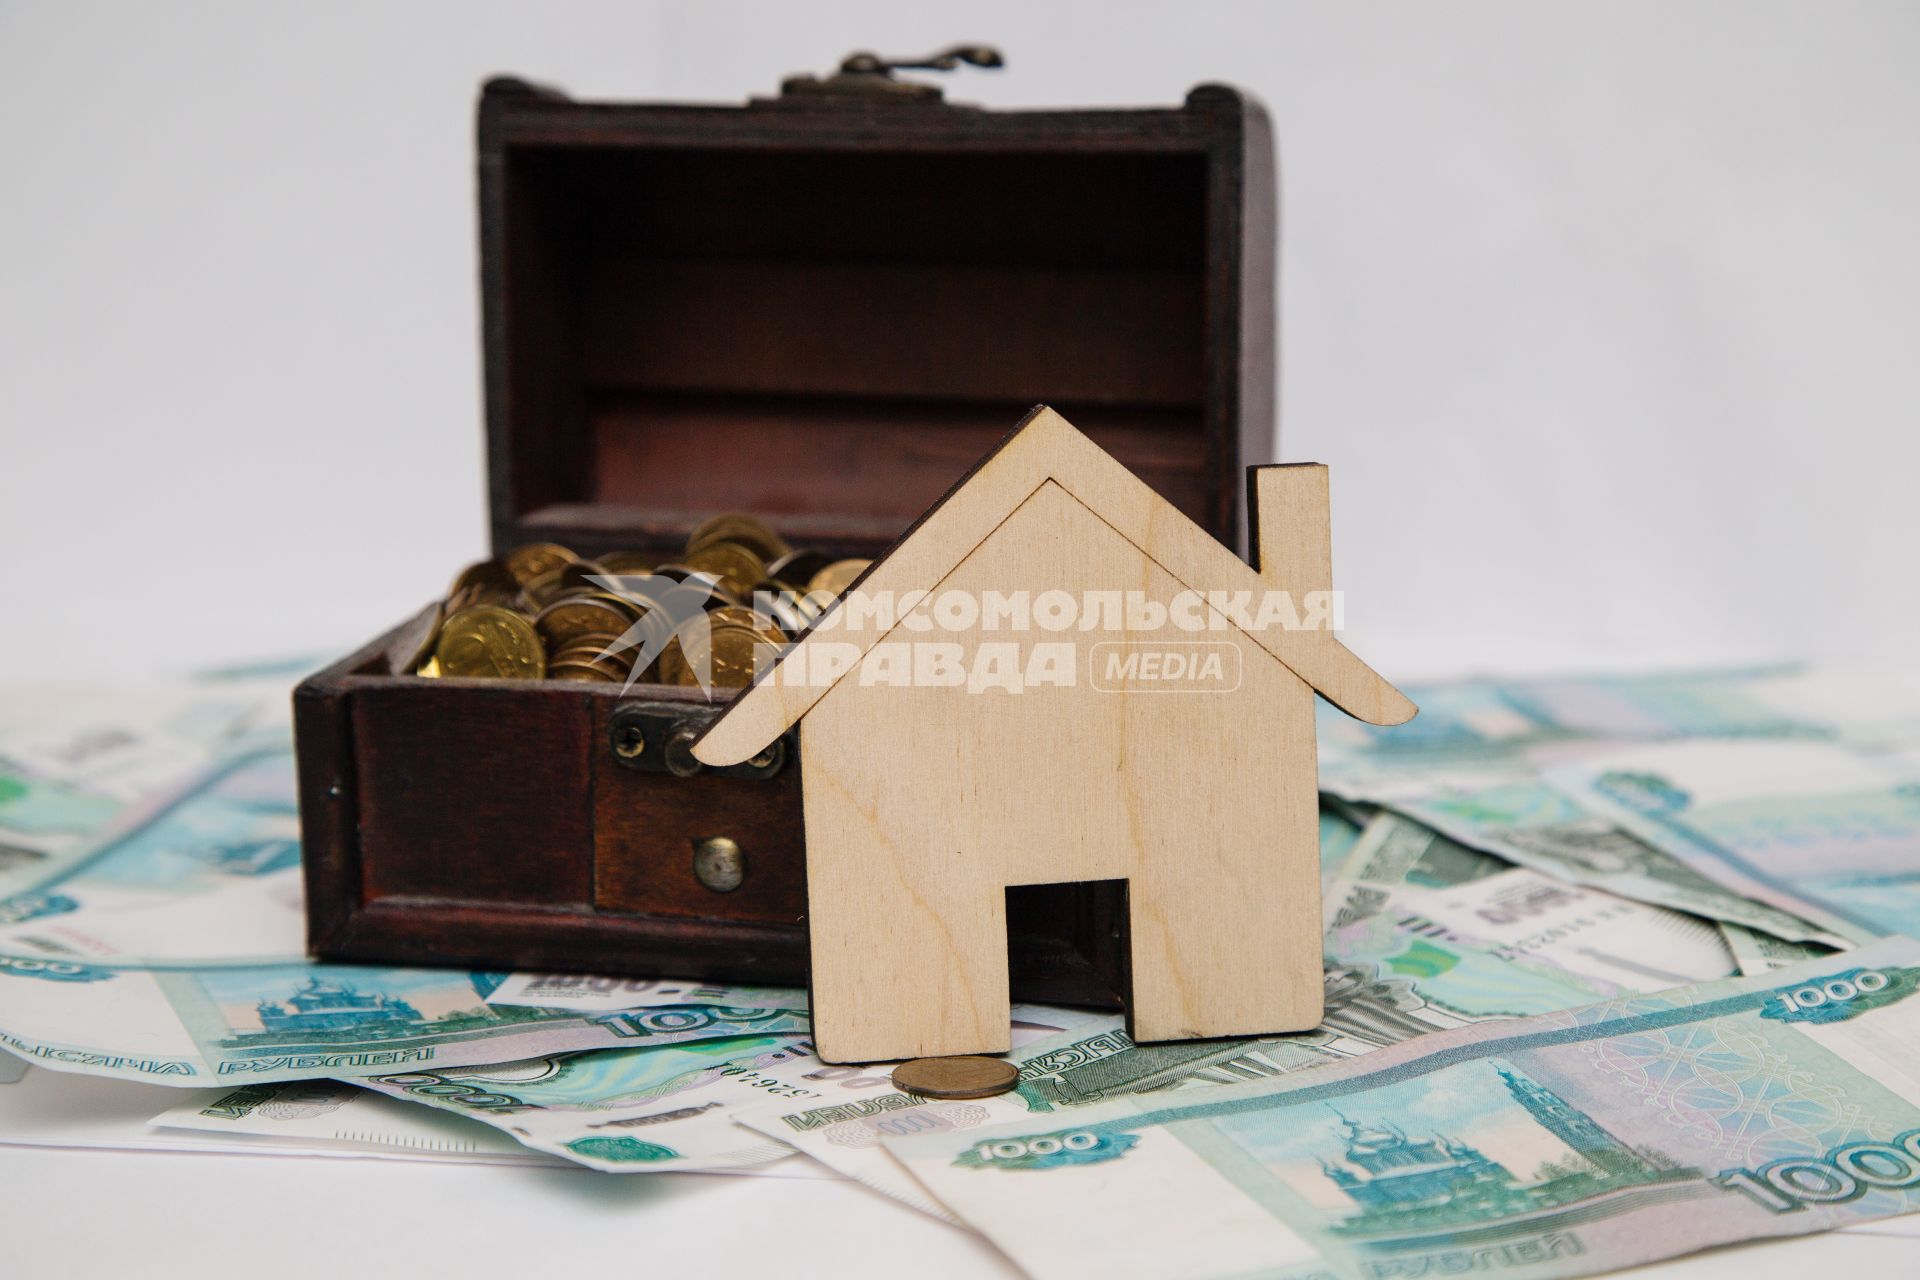 Челябинск. Деревянный домик, деньги и шкатулка.